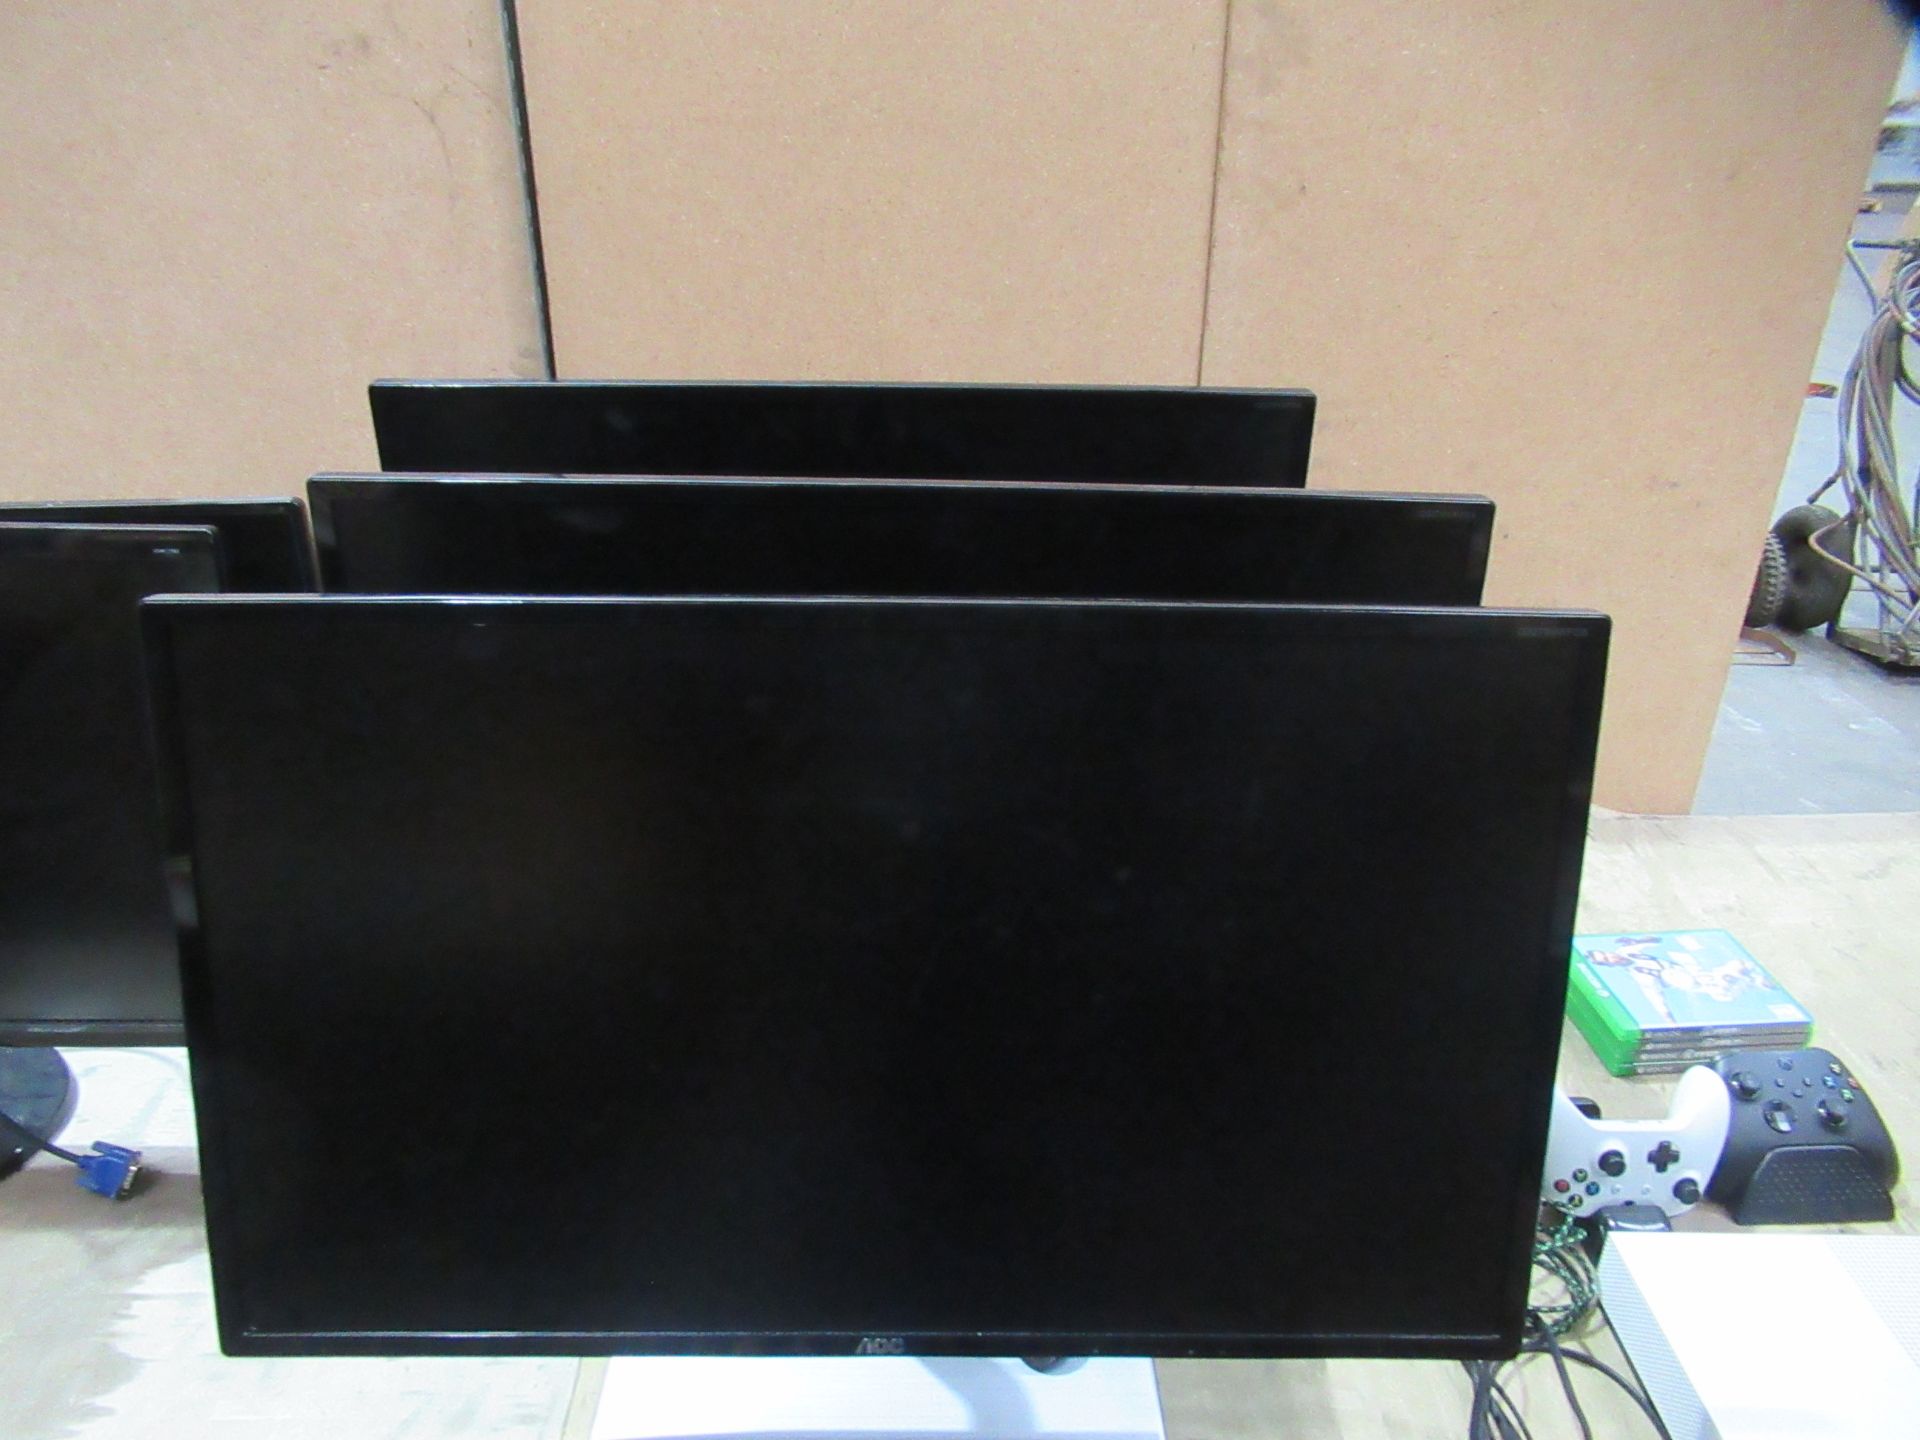 3x AOC LCD Monitors (LED Backlight)